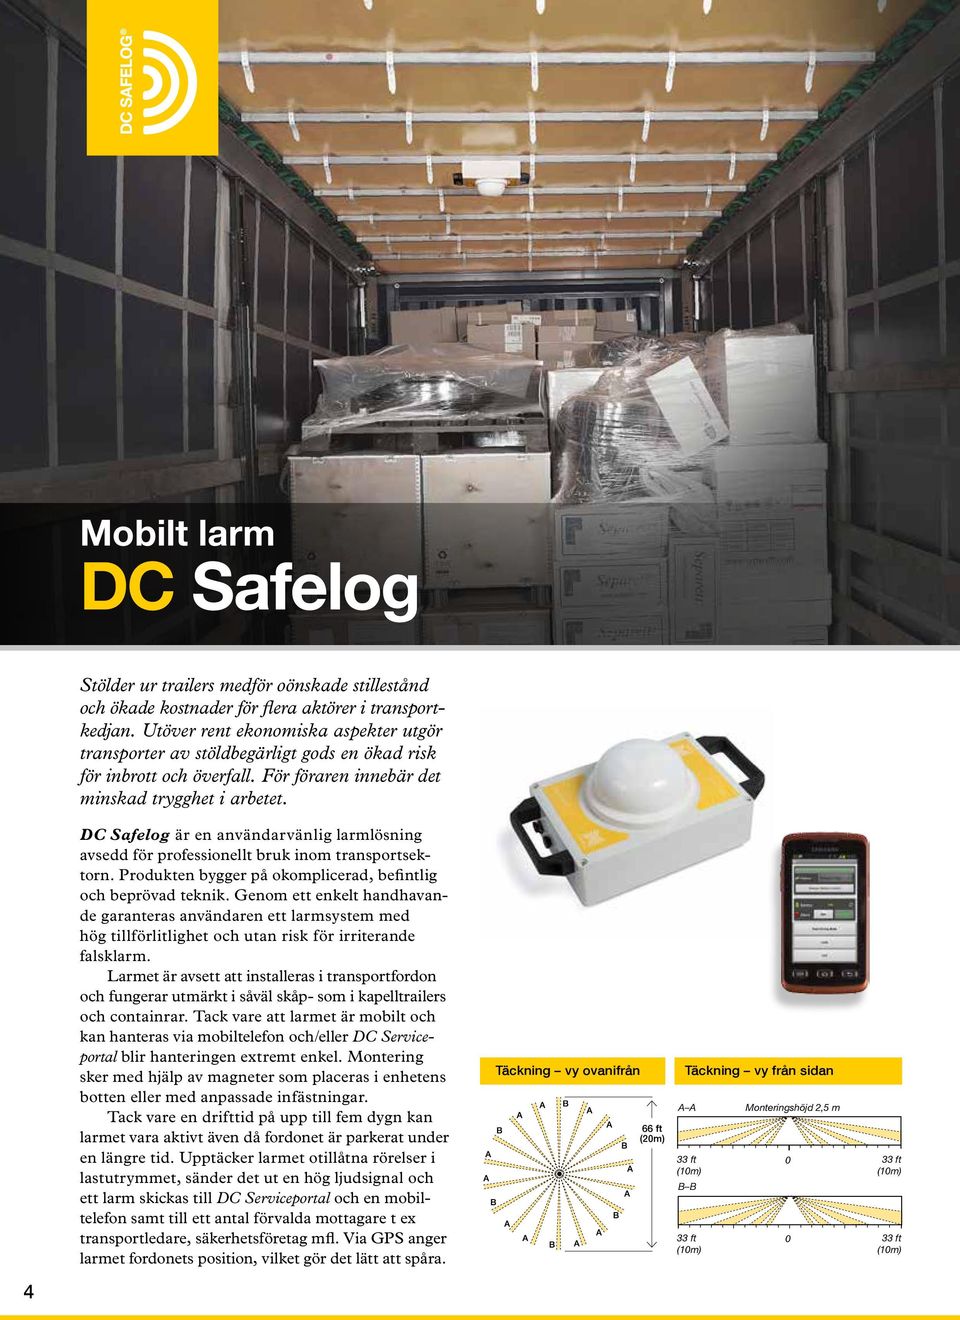 DC Safelog är en användarvänlig larmlösning avsedd för professionellt bruk inom transportsektorn. Produkten bygger på okomplicerad, befintlig och beprövad teknik.